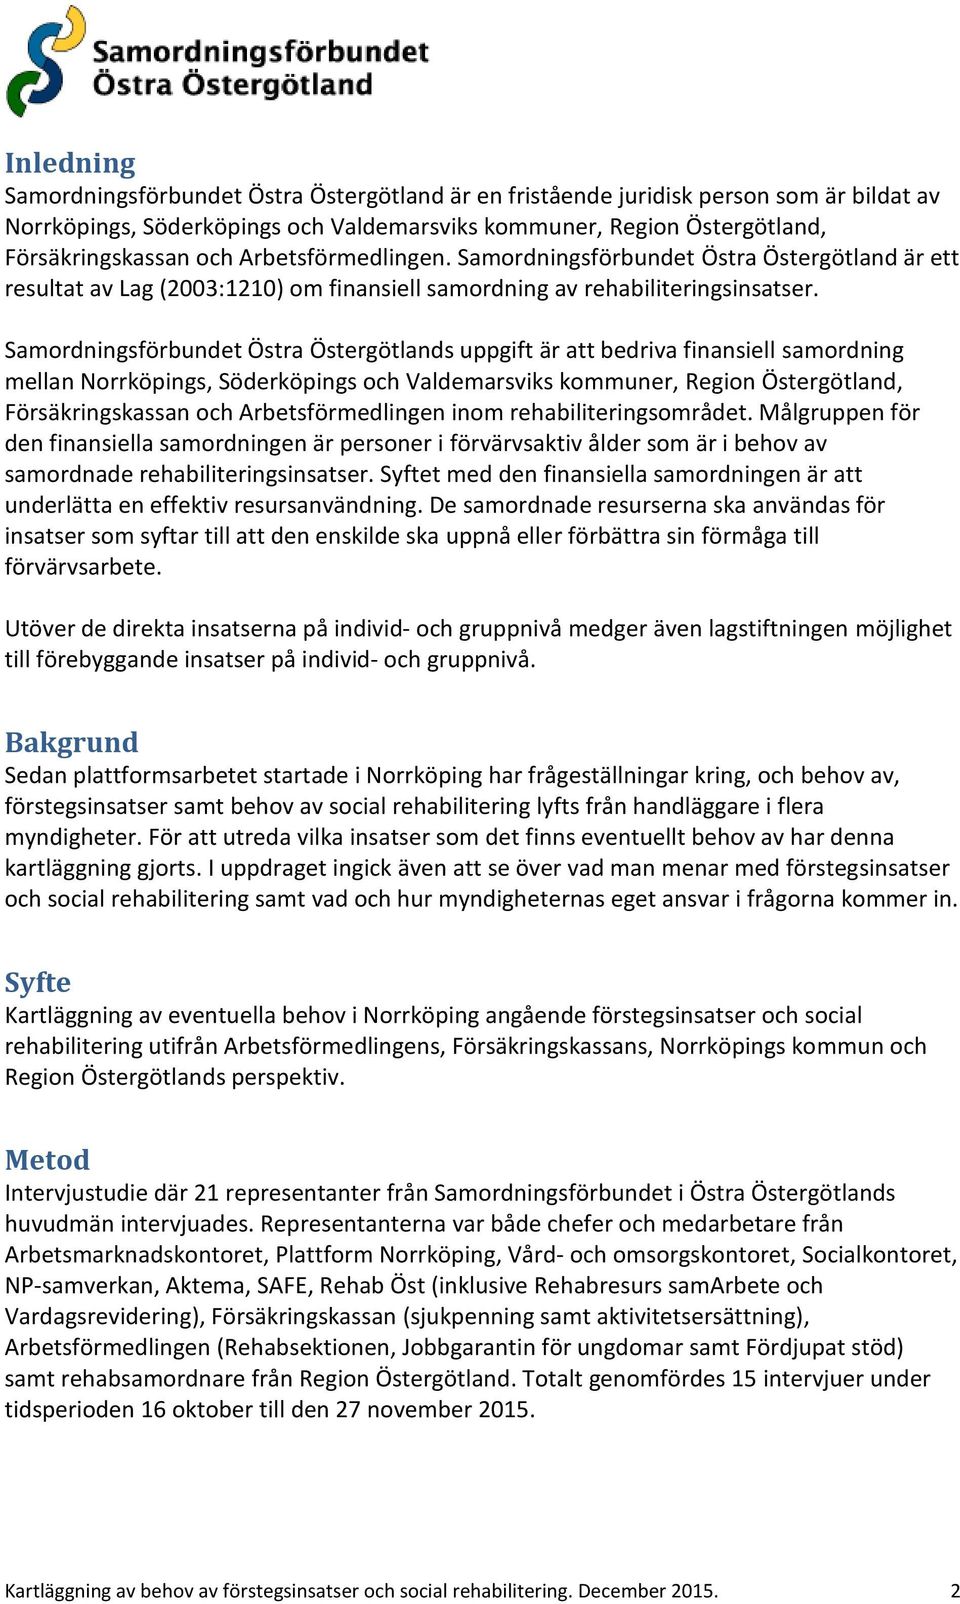 Samordningsförbundet Östra Östergötlands uppgift är att bedriva finansiell samordning mellan Norrköpings, Söderköpings och Valdemarsviks kommuner, Region Östergötland, Försäkringskassan och